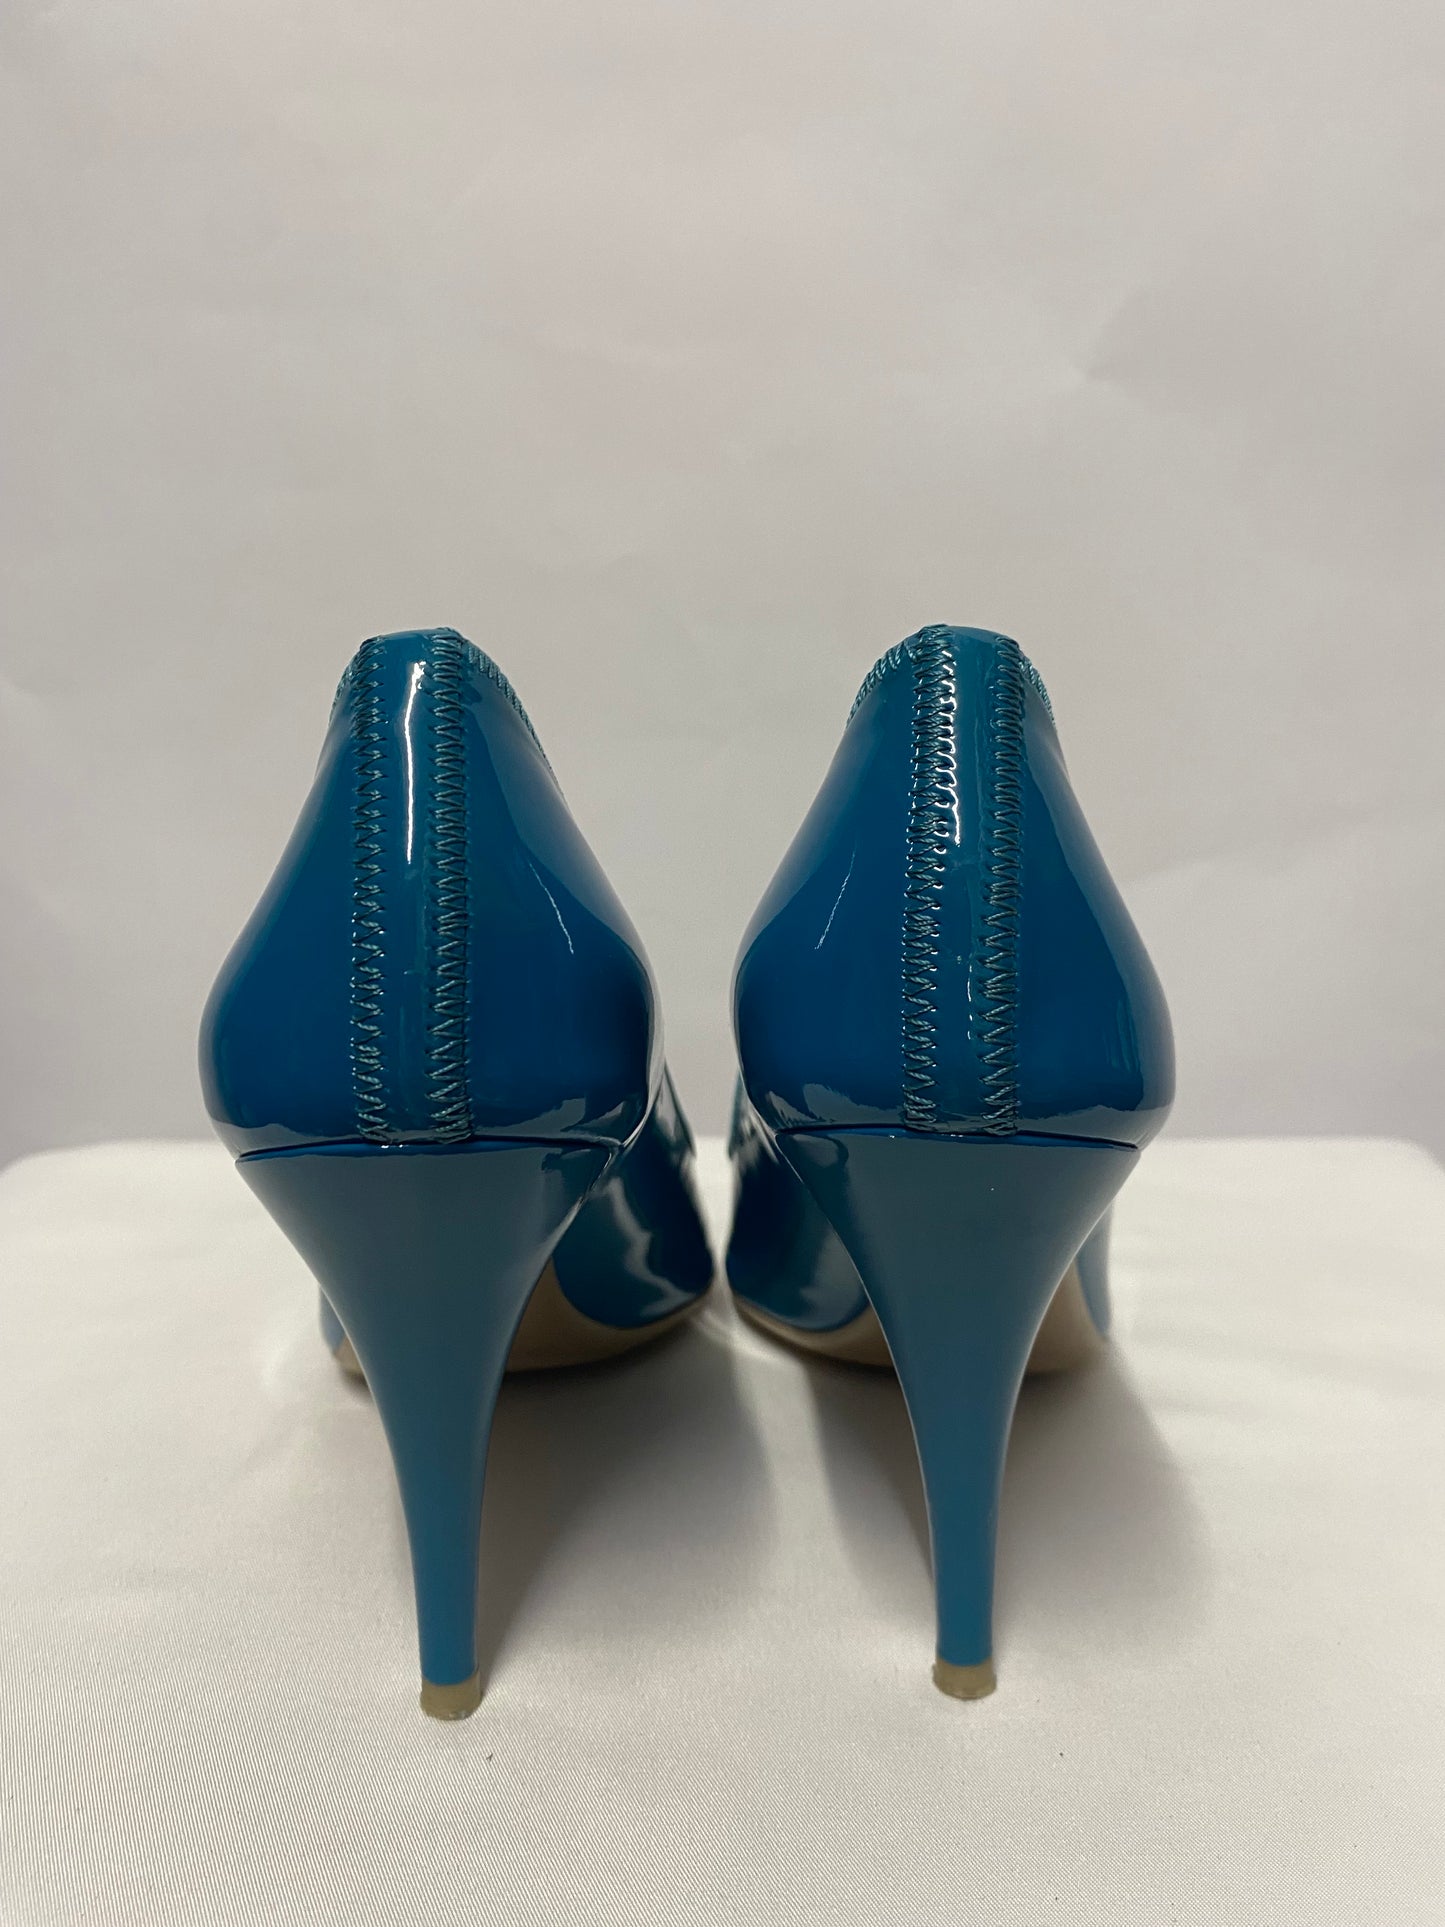 Prada Turquoise Patent Open Toe Stiletto Heels 4.5